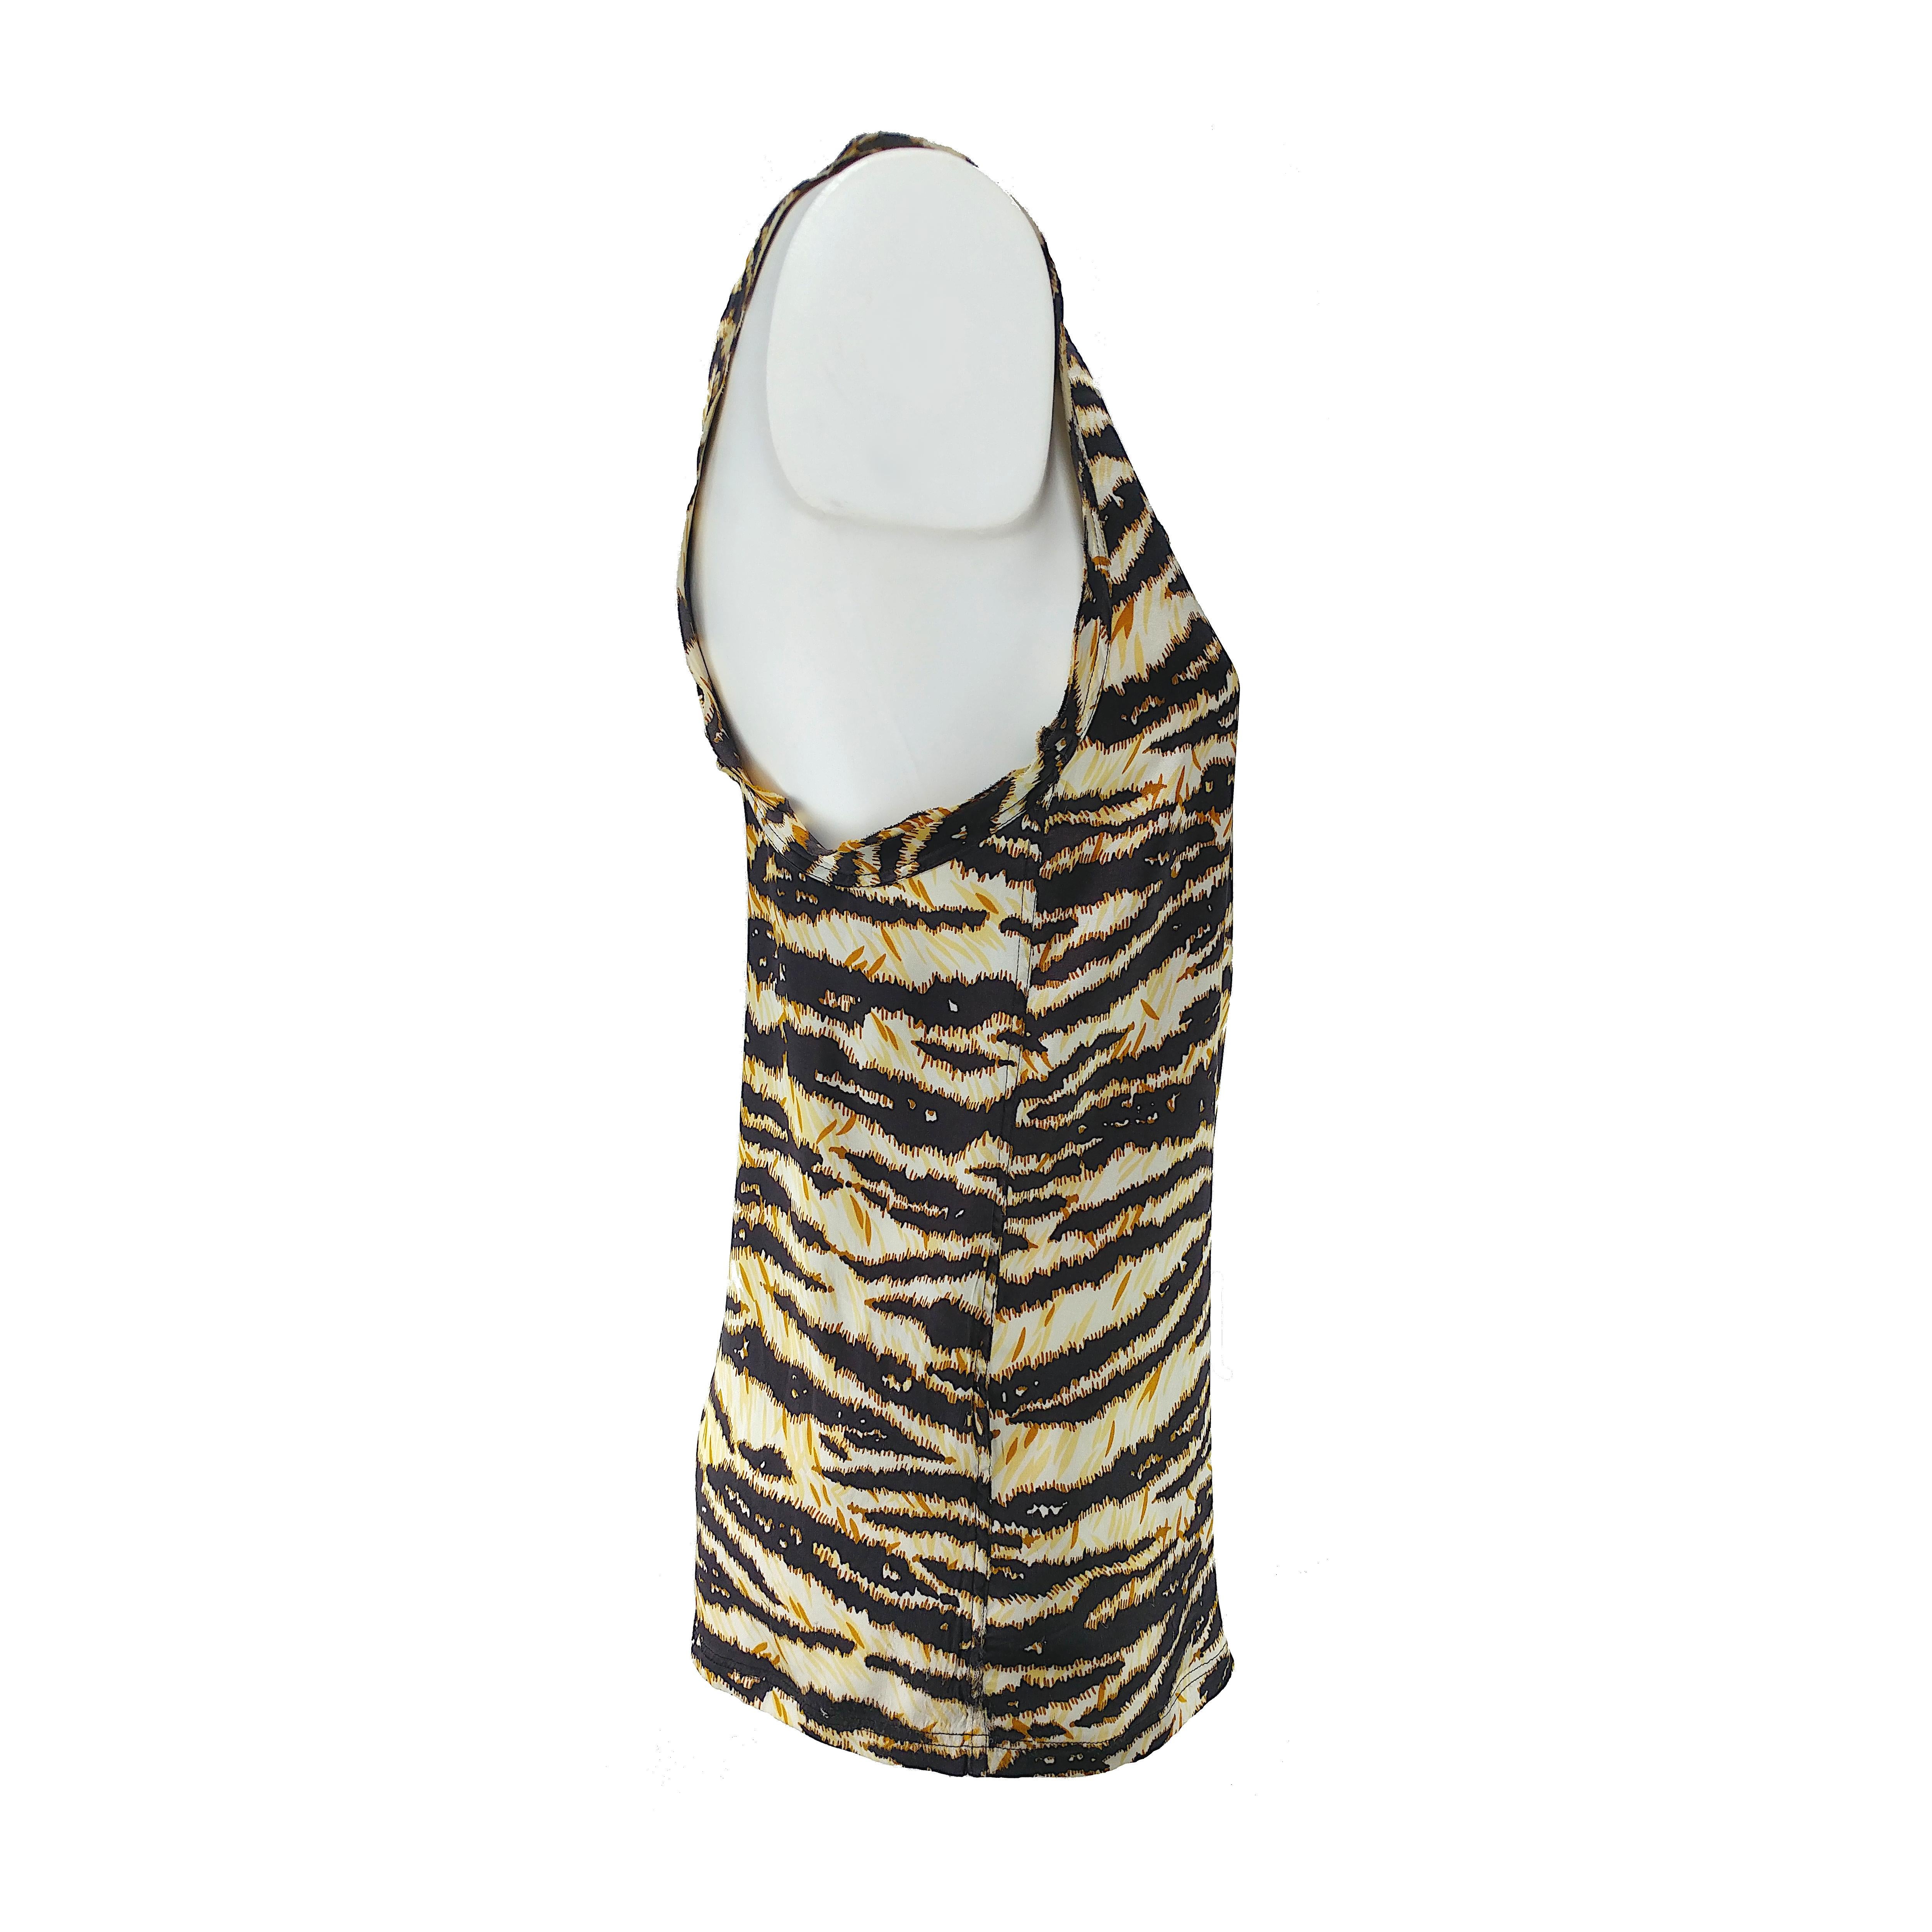 Der kultige Tiger-Print von Dolce & Gabbana ist das Hauptthema dieses Tanktops aus weichem Seidenstoff und mit gerafftem Ausschnitt. Dieses sommerliche Top ist super bequem und frisch und befindet sich in einem ausgezeichneten Zustand ohne